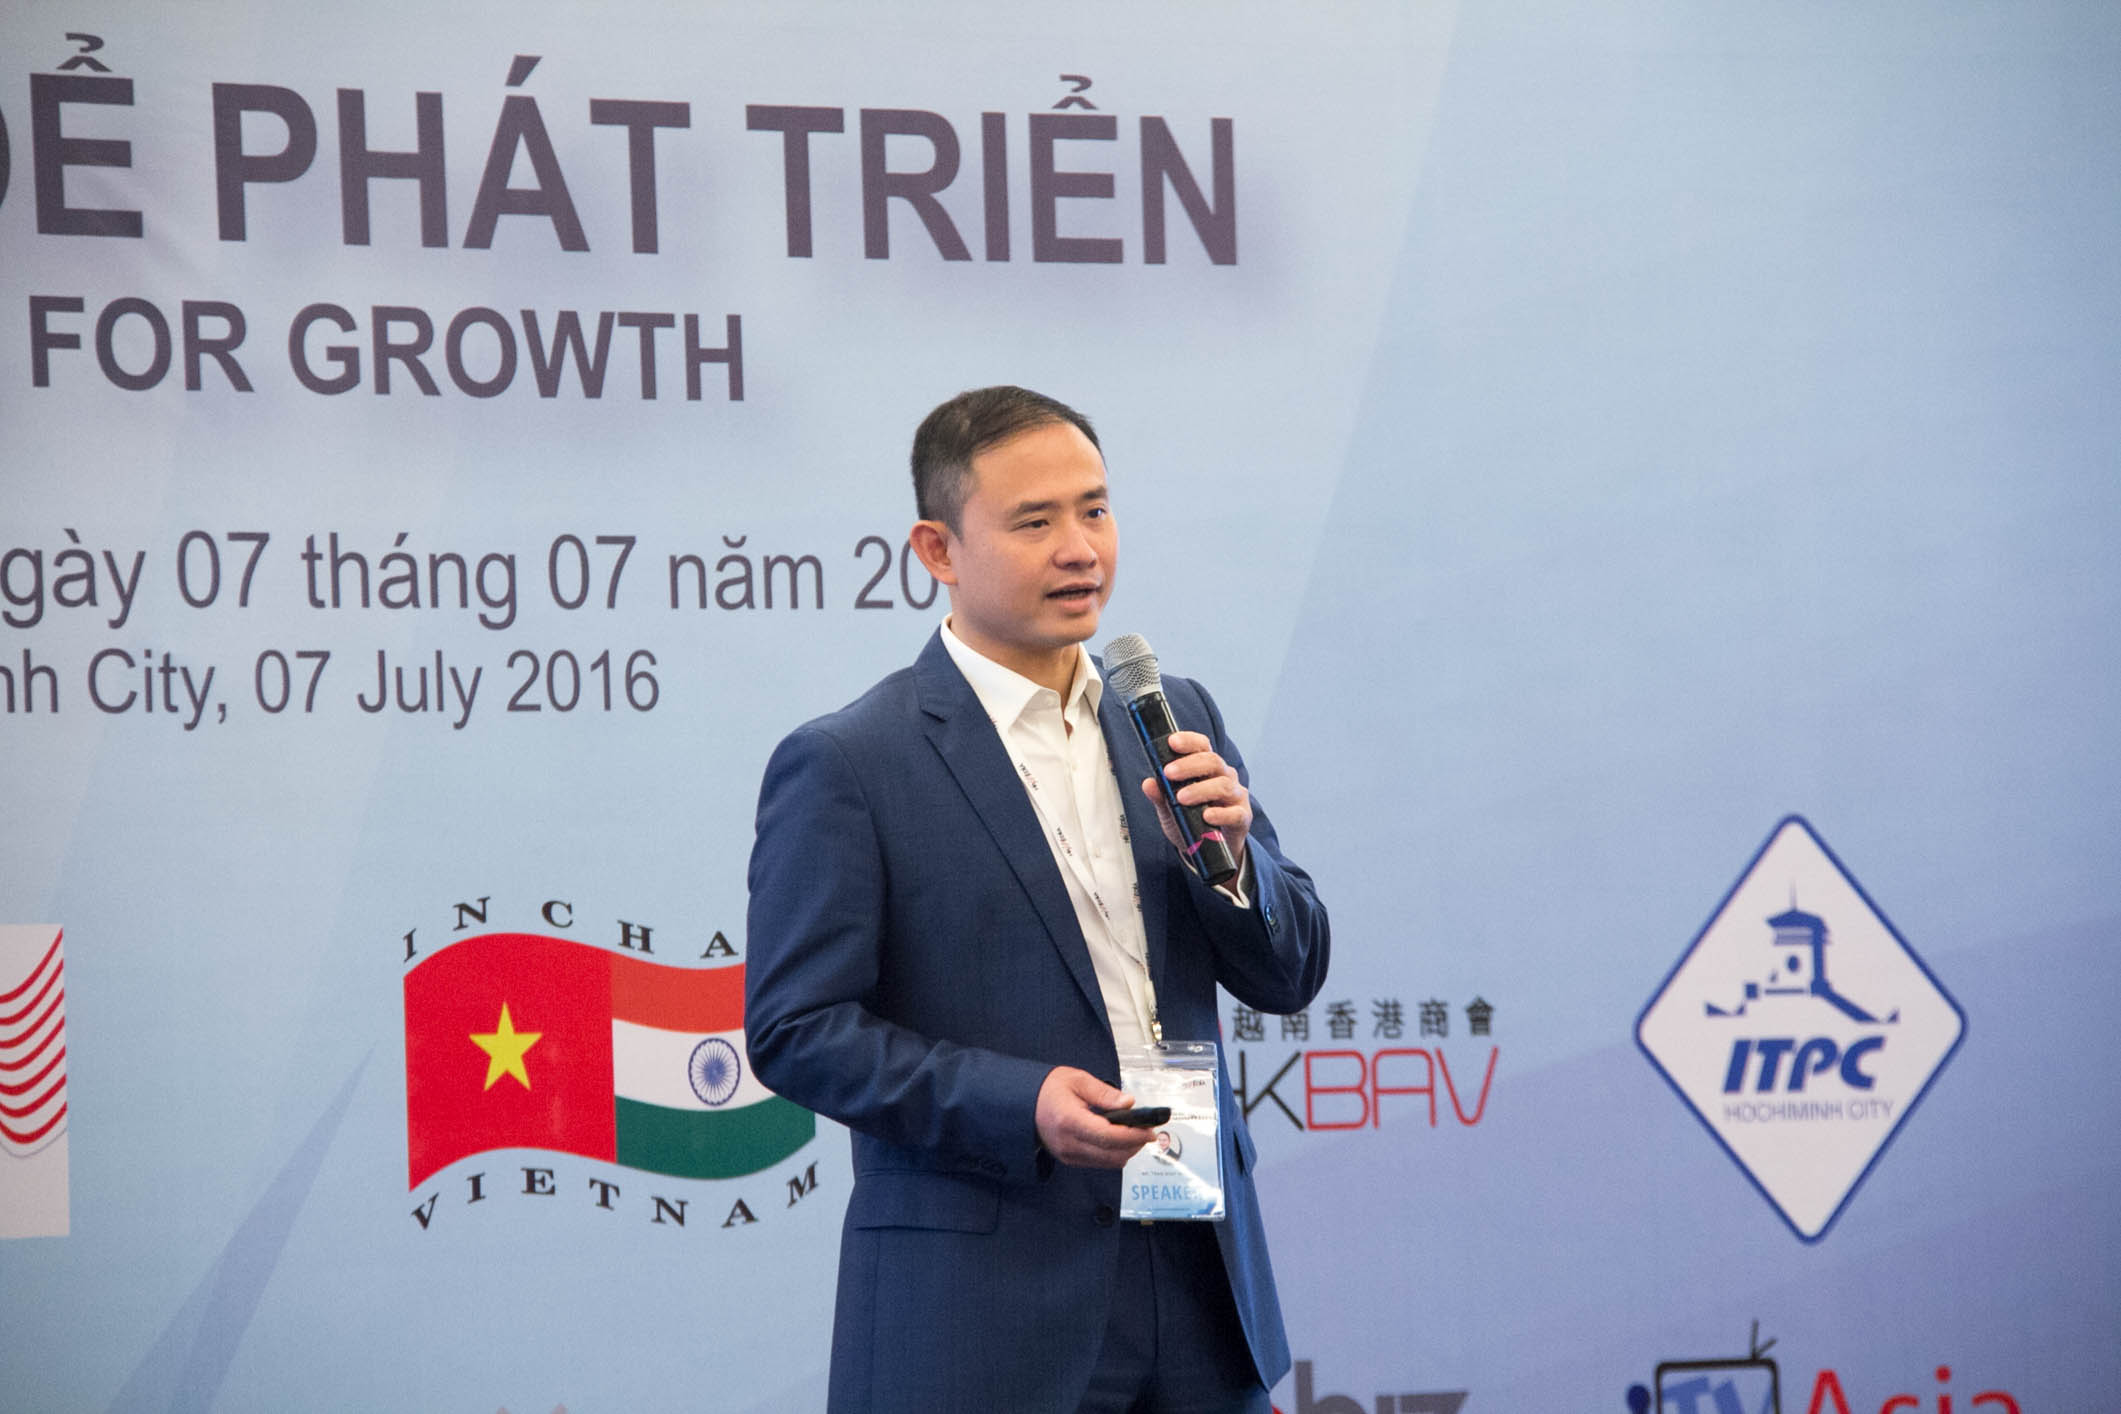 Phó giám đốc Trần Nhất Minh đăng kí mua thêm 1 triệu cổ phiếu